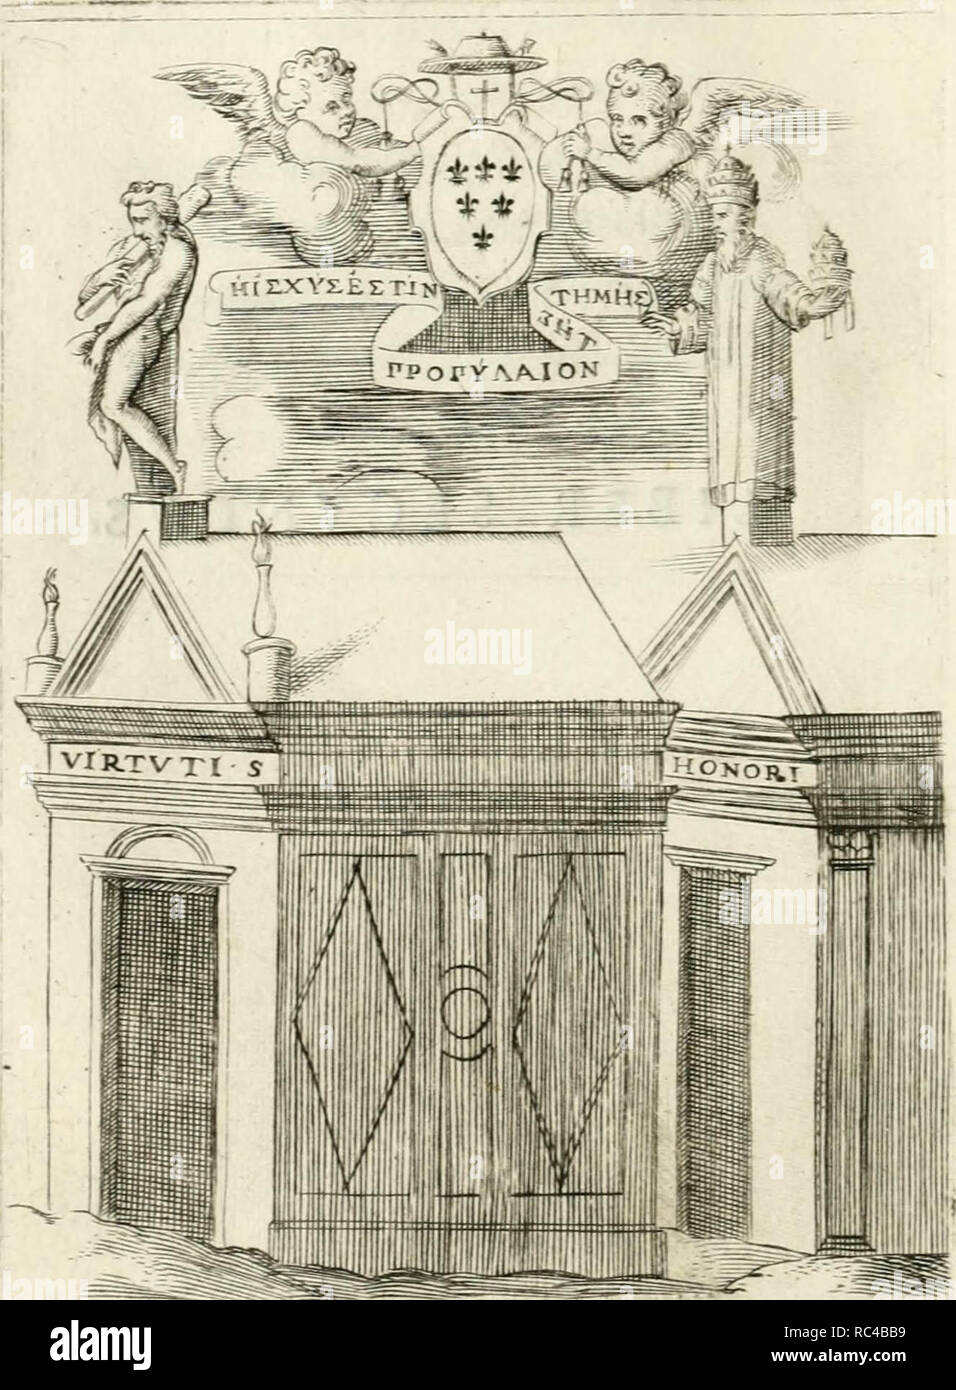 'Achillis Bocchii Bonon. Symbolicarvm quaestionvm de vniverso genere qvas serio lvdebat libri qvinqve' (1555) Stock Photo